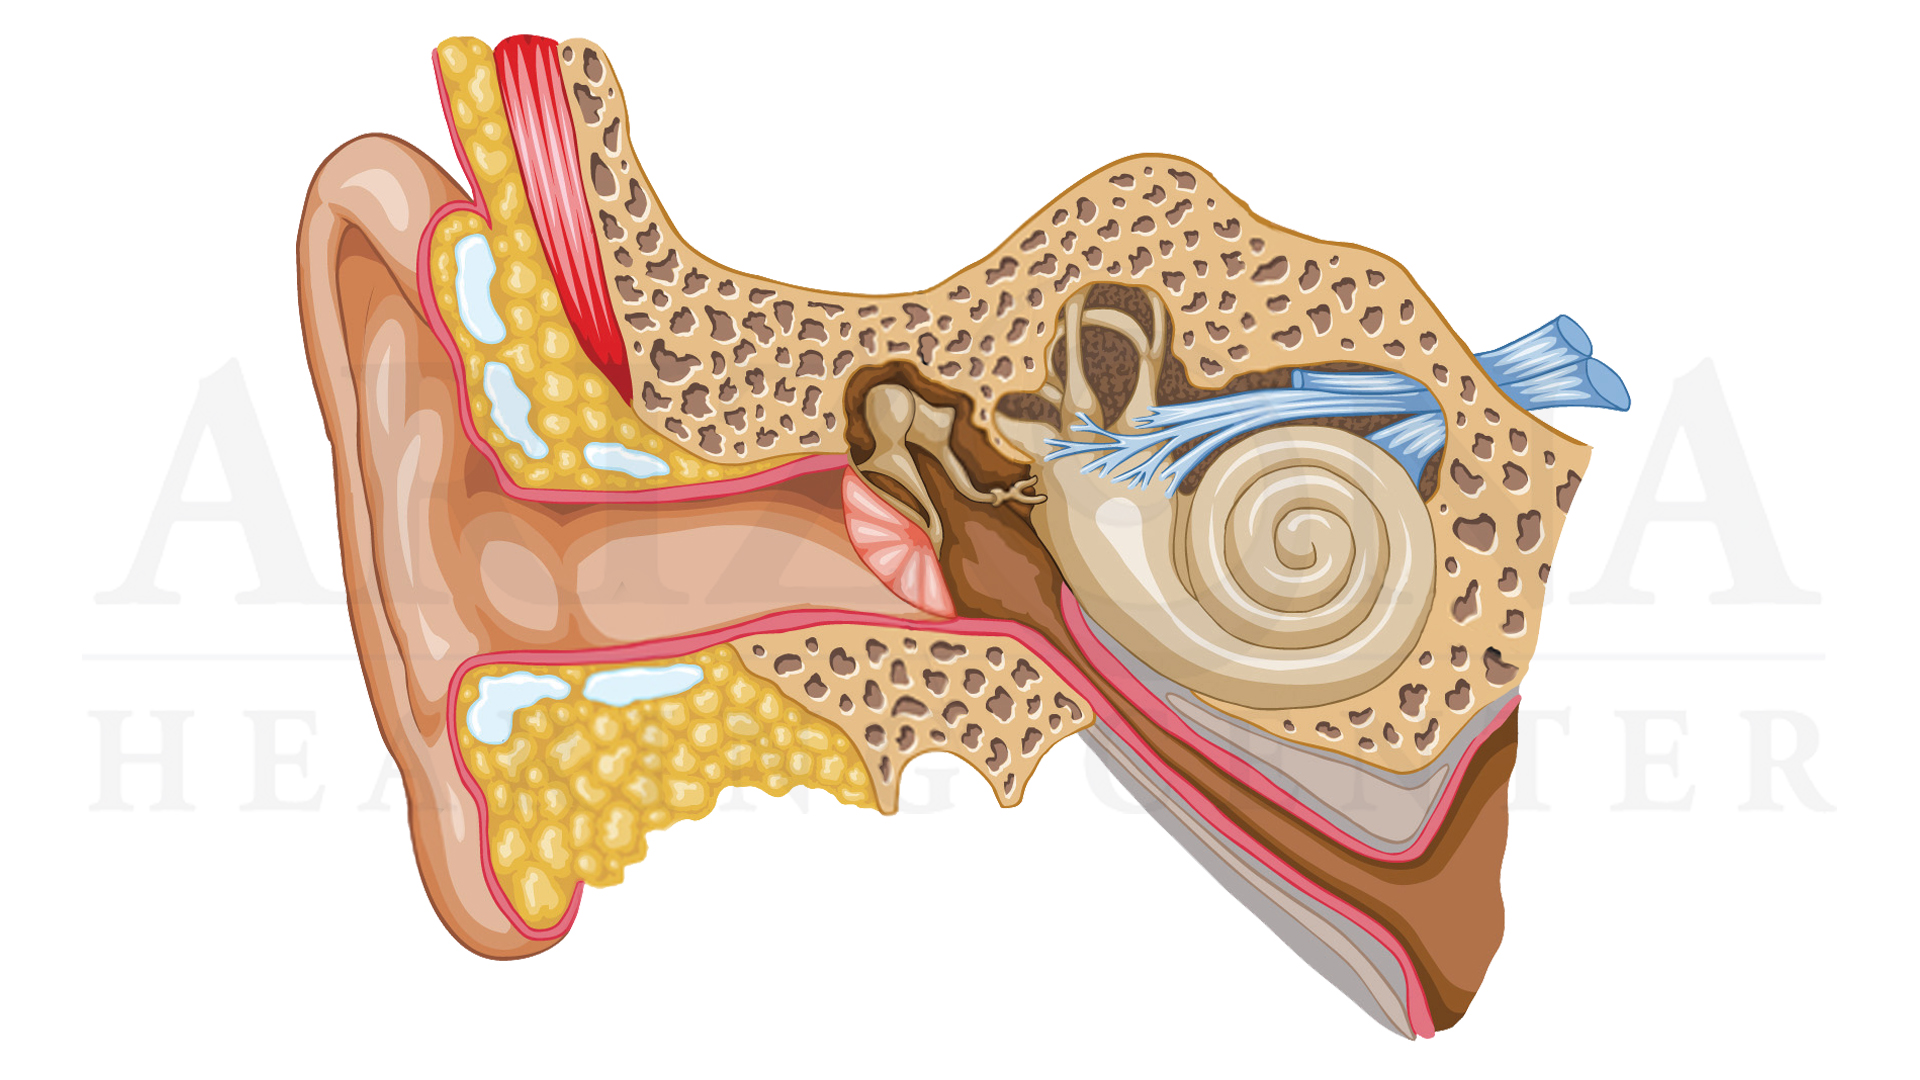 Скрежет в ухе. Фурункул наружного слухового прохода. Кохлеарный неврит слухового нерва. Наружный отит слухового прохода.